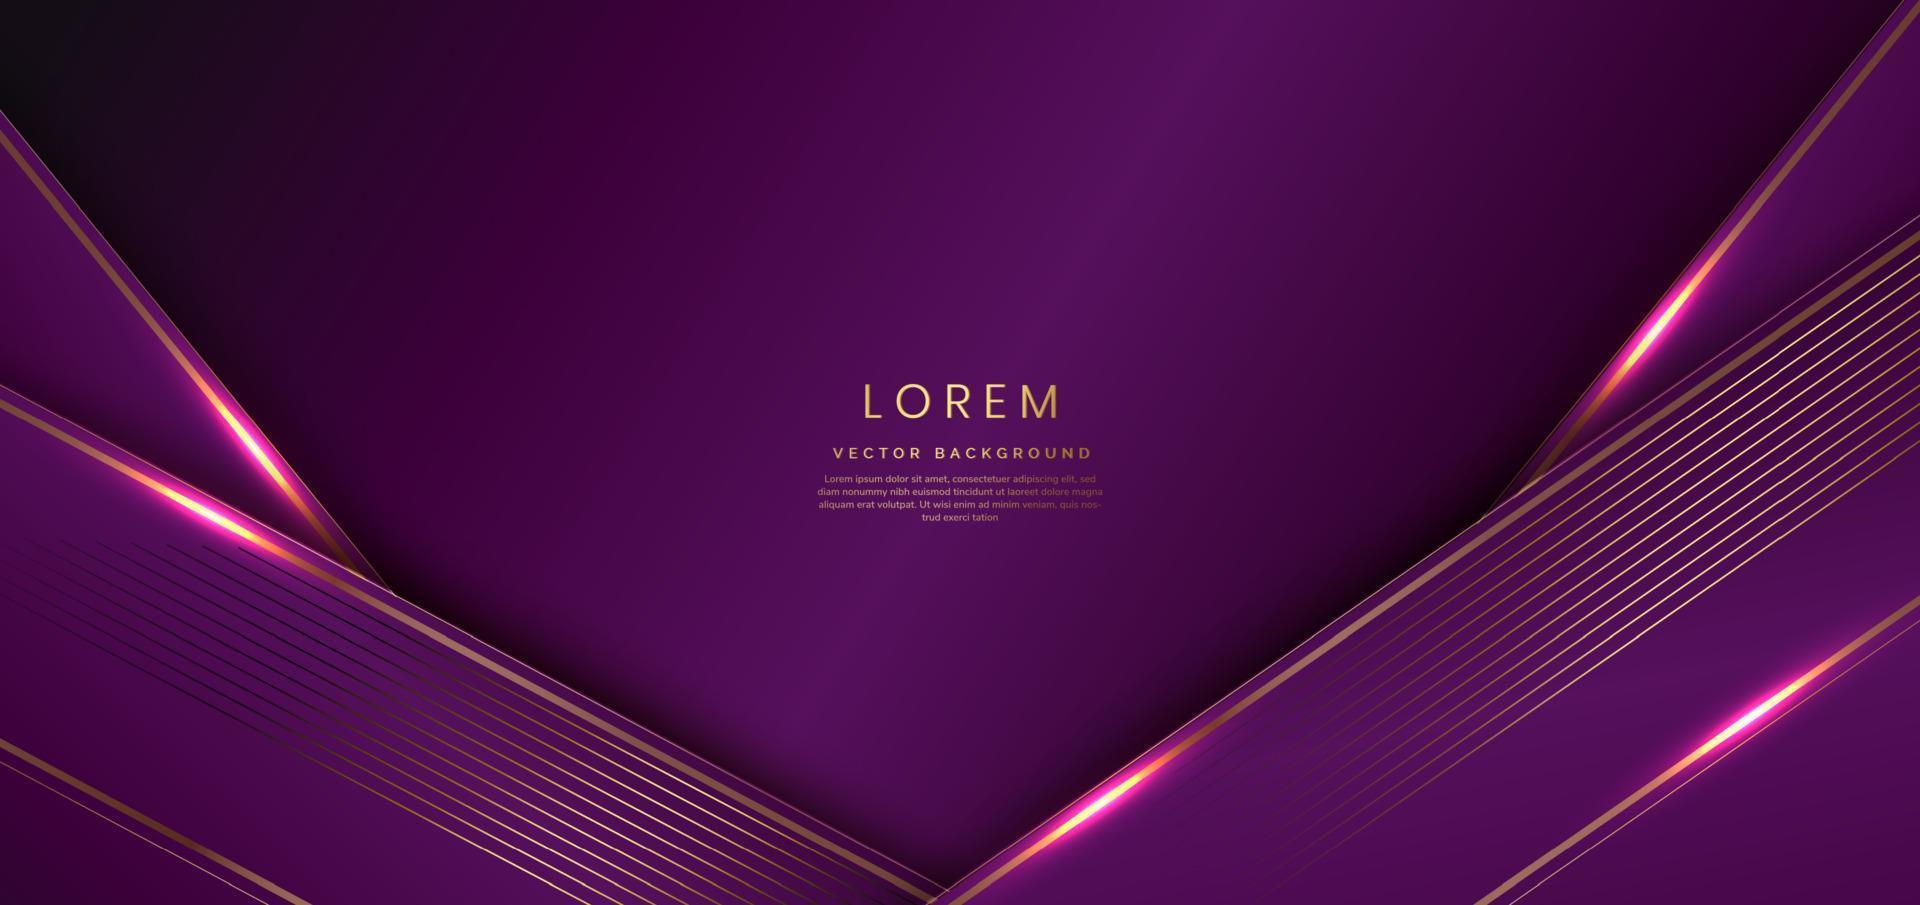 dunkel lila Luxus Hintergrund mit Gold Linien und Beleuchtung Wirkung. Vorlage vergeben Design. vektor